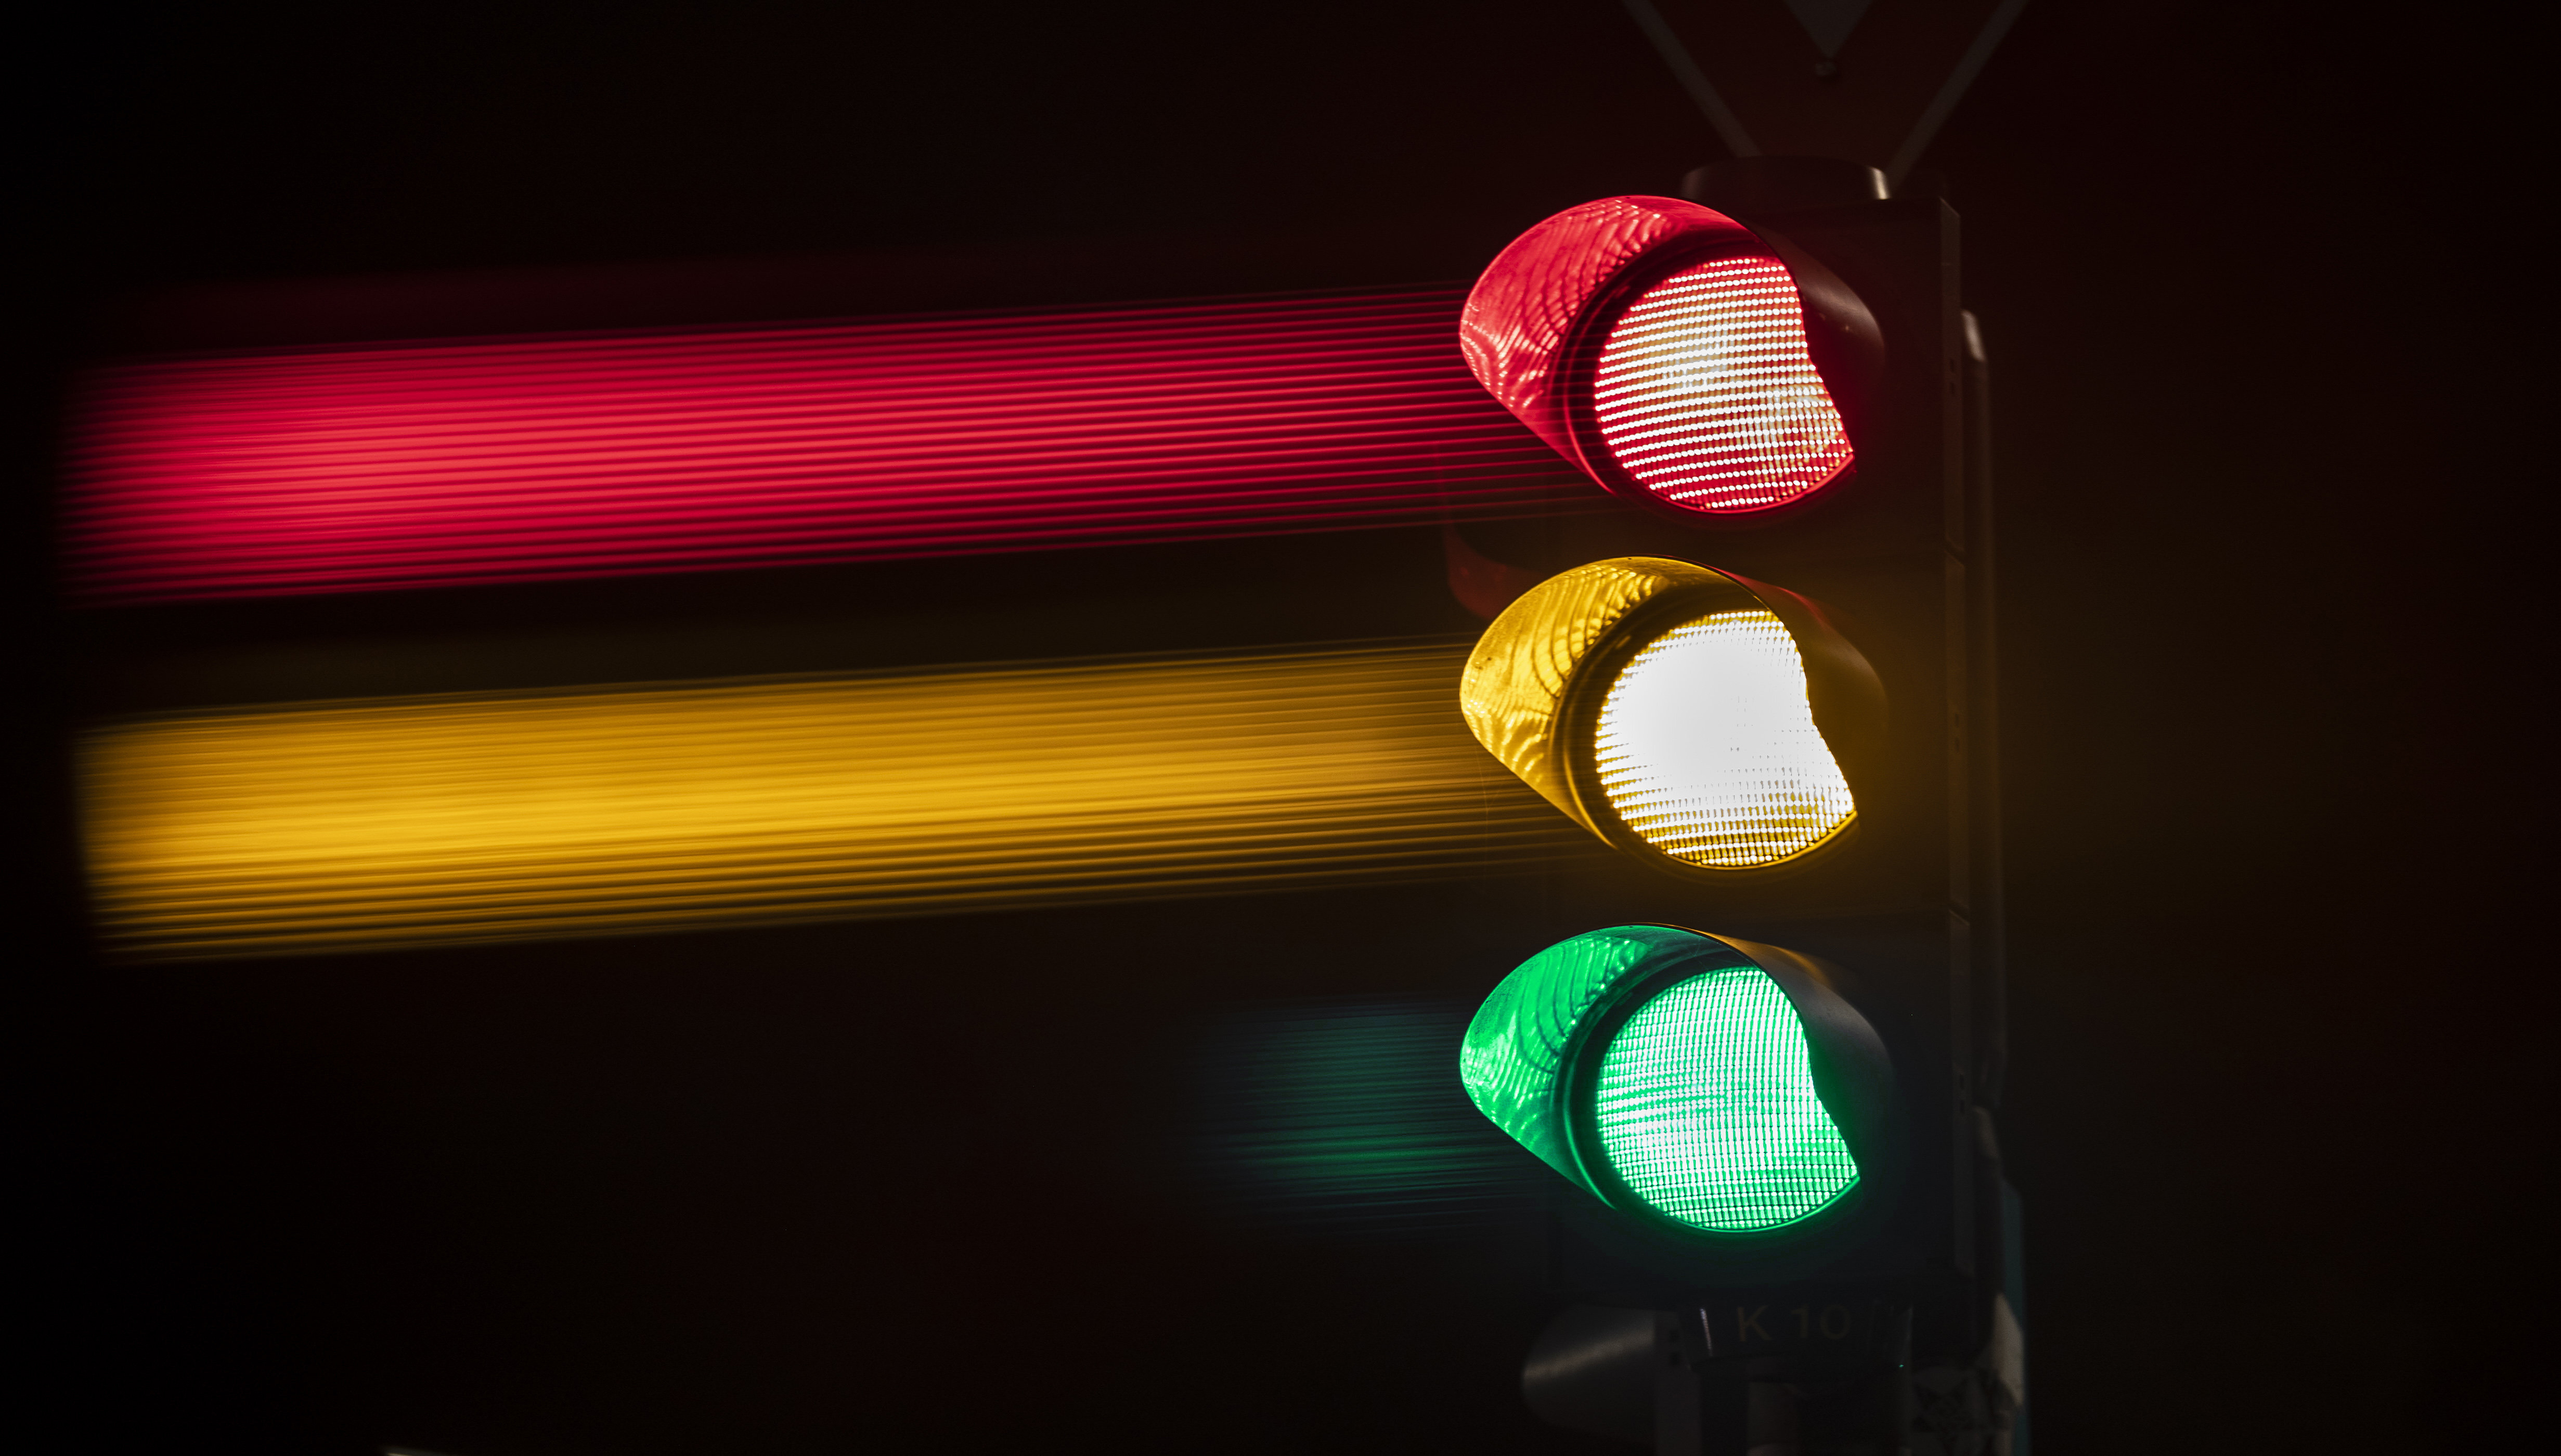 Eine Ampel zeigt die Lichter in grün, gelb und rot. | picture alliance / photothek